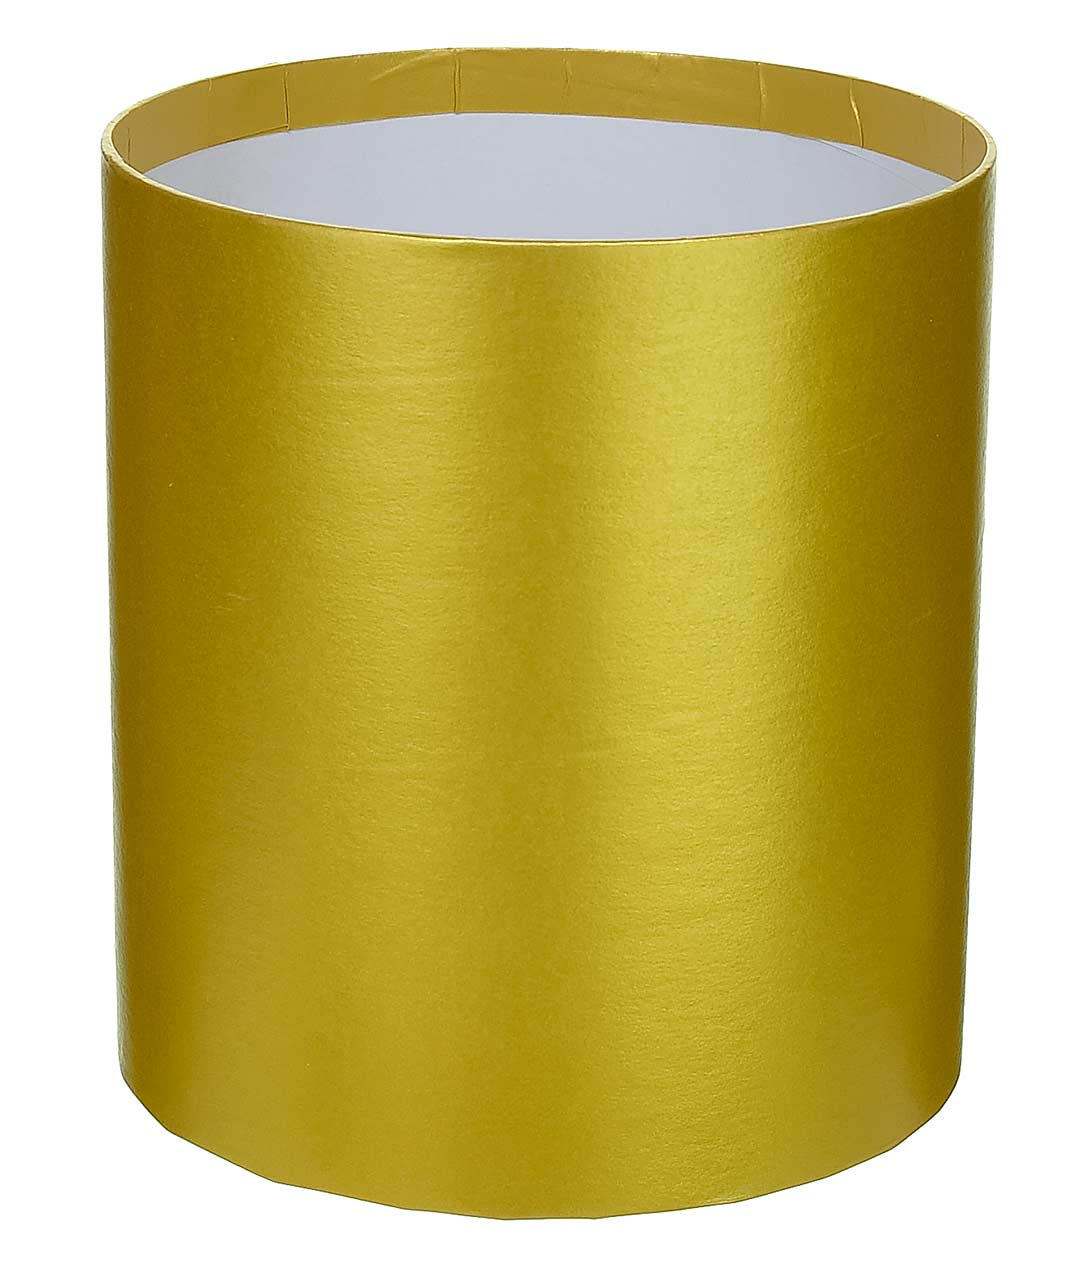 Изображение Коробка круглая для цветов золотистая из картона 145/160 без крышки